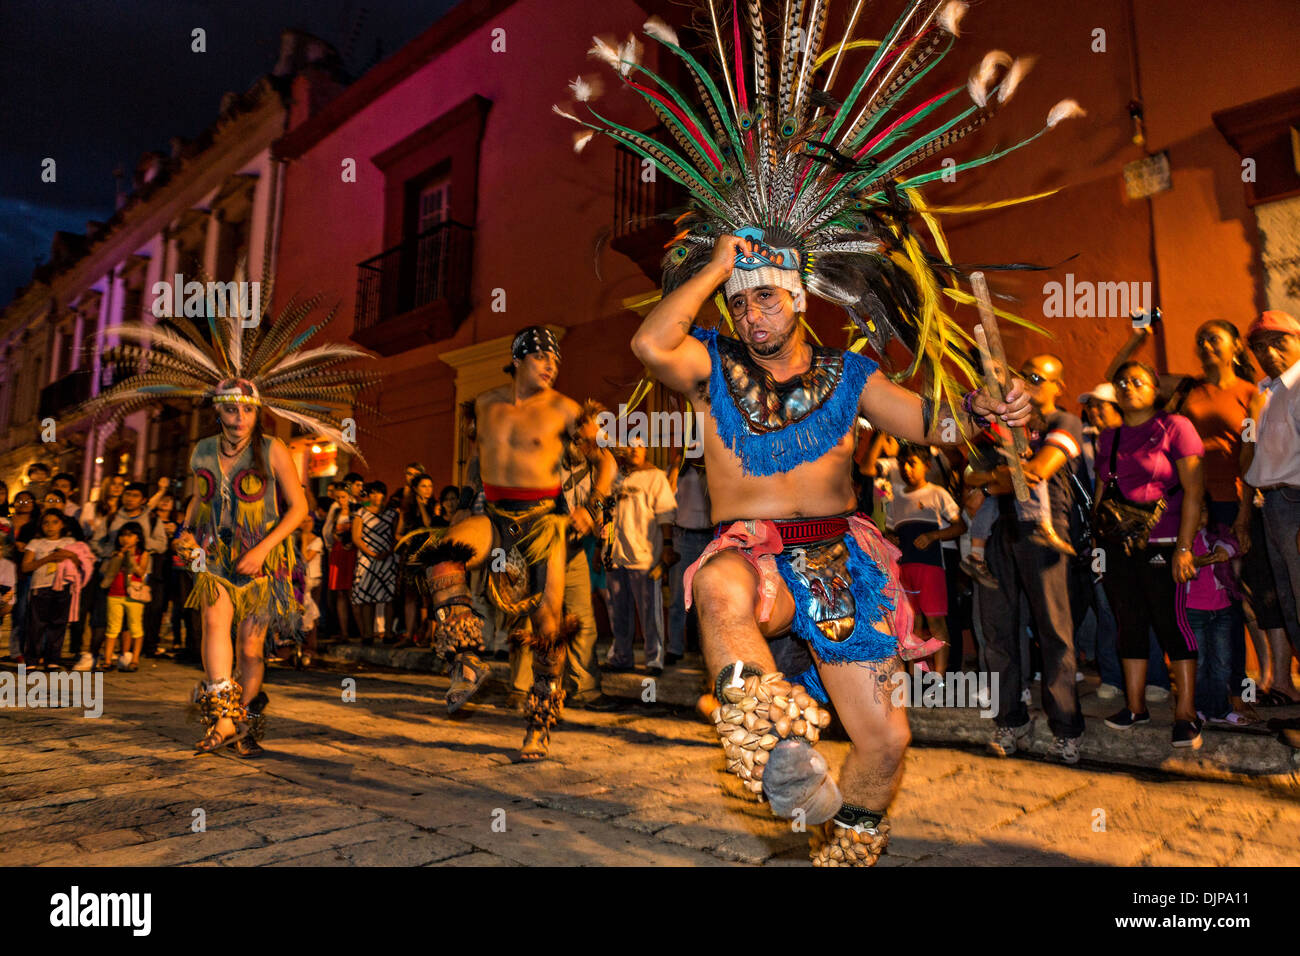 Las murgas de indios mayas celebrando el Día de los muertos el 1 de noviembre de 2013 en Oaxaca, México. Foto de stock